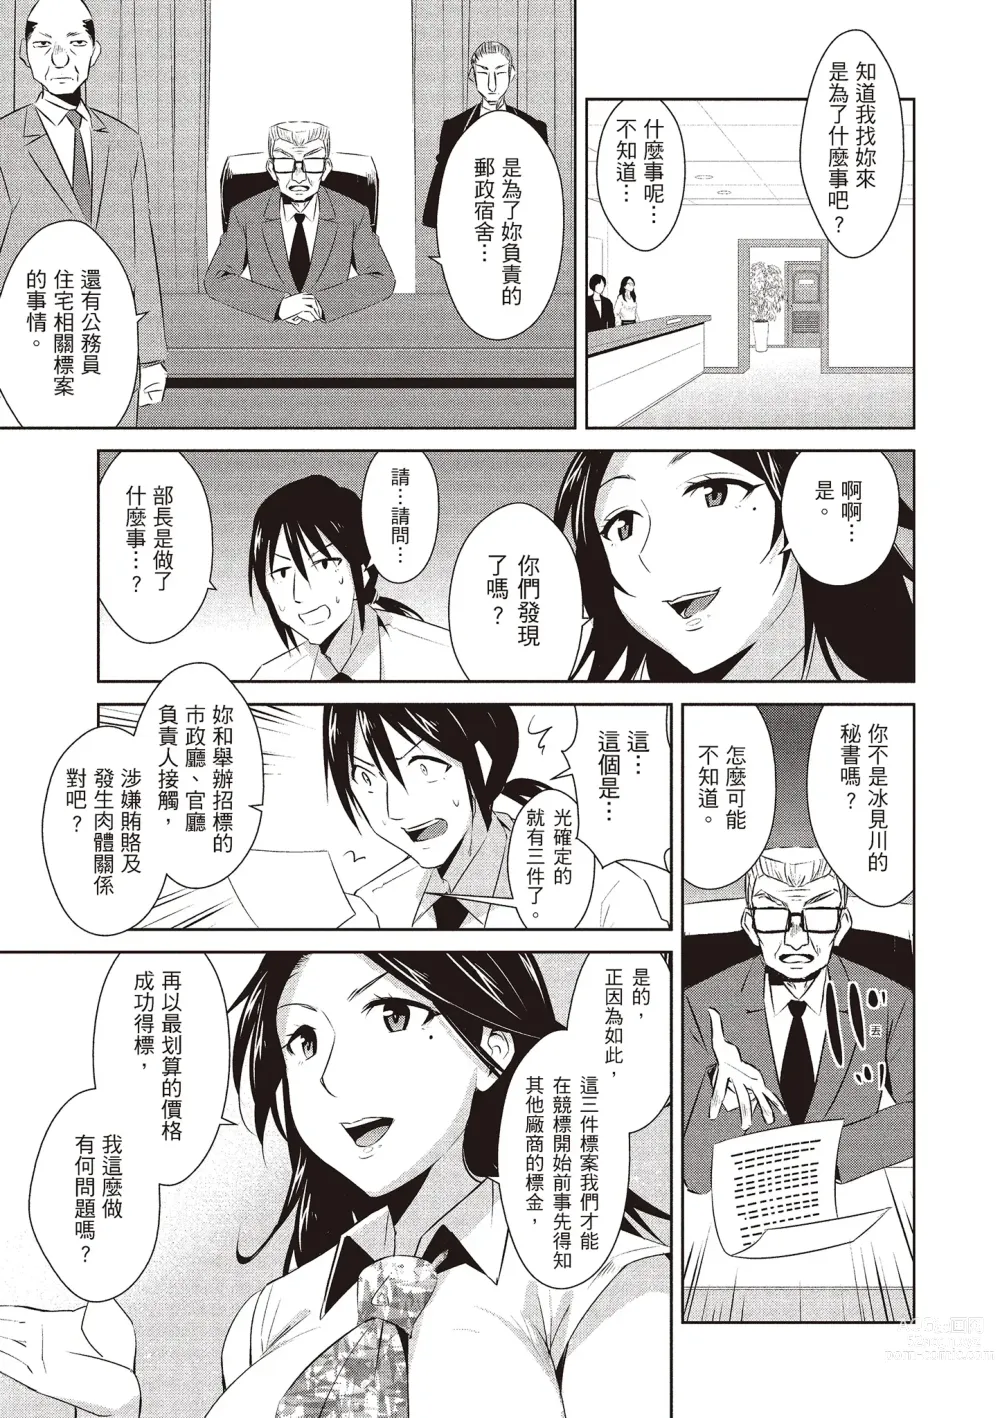 Page 167 of manga 朋友間的淫事